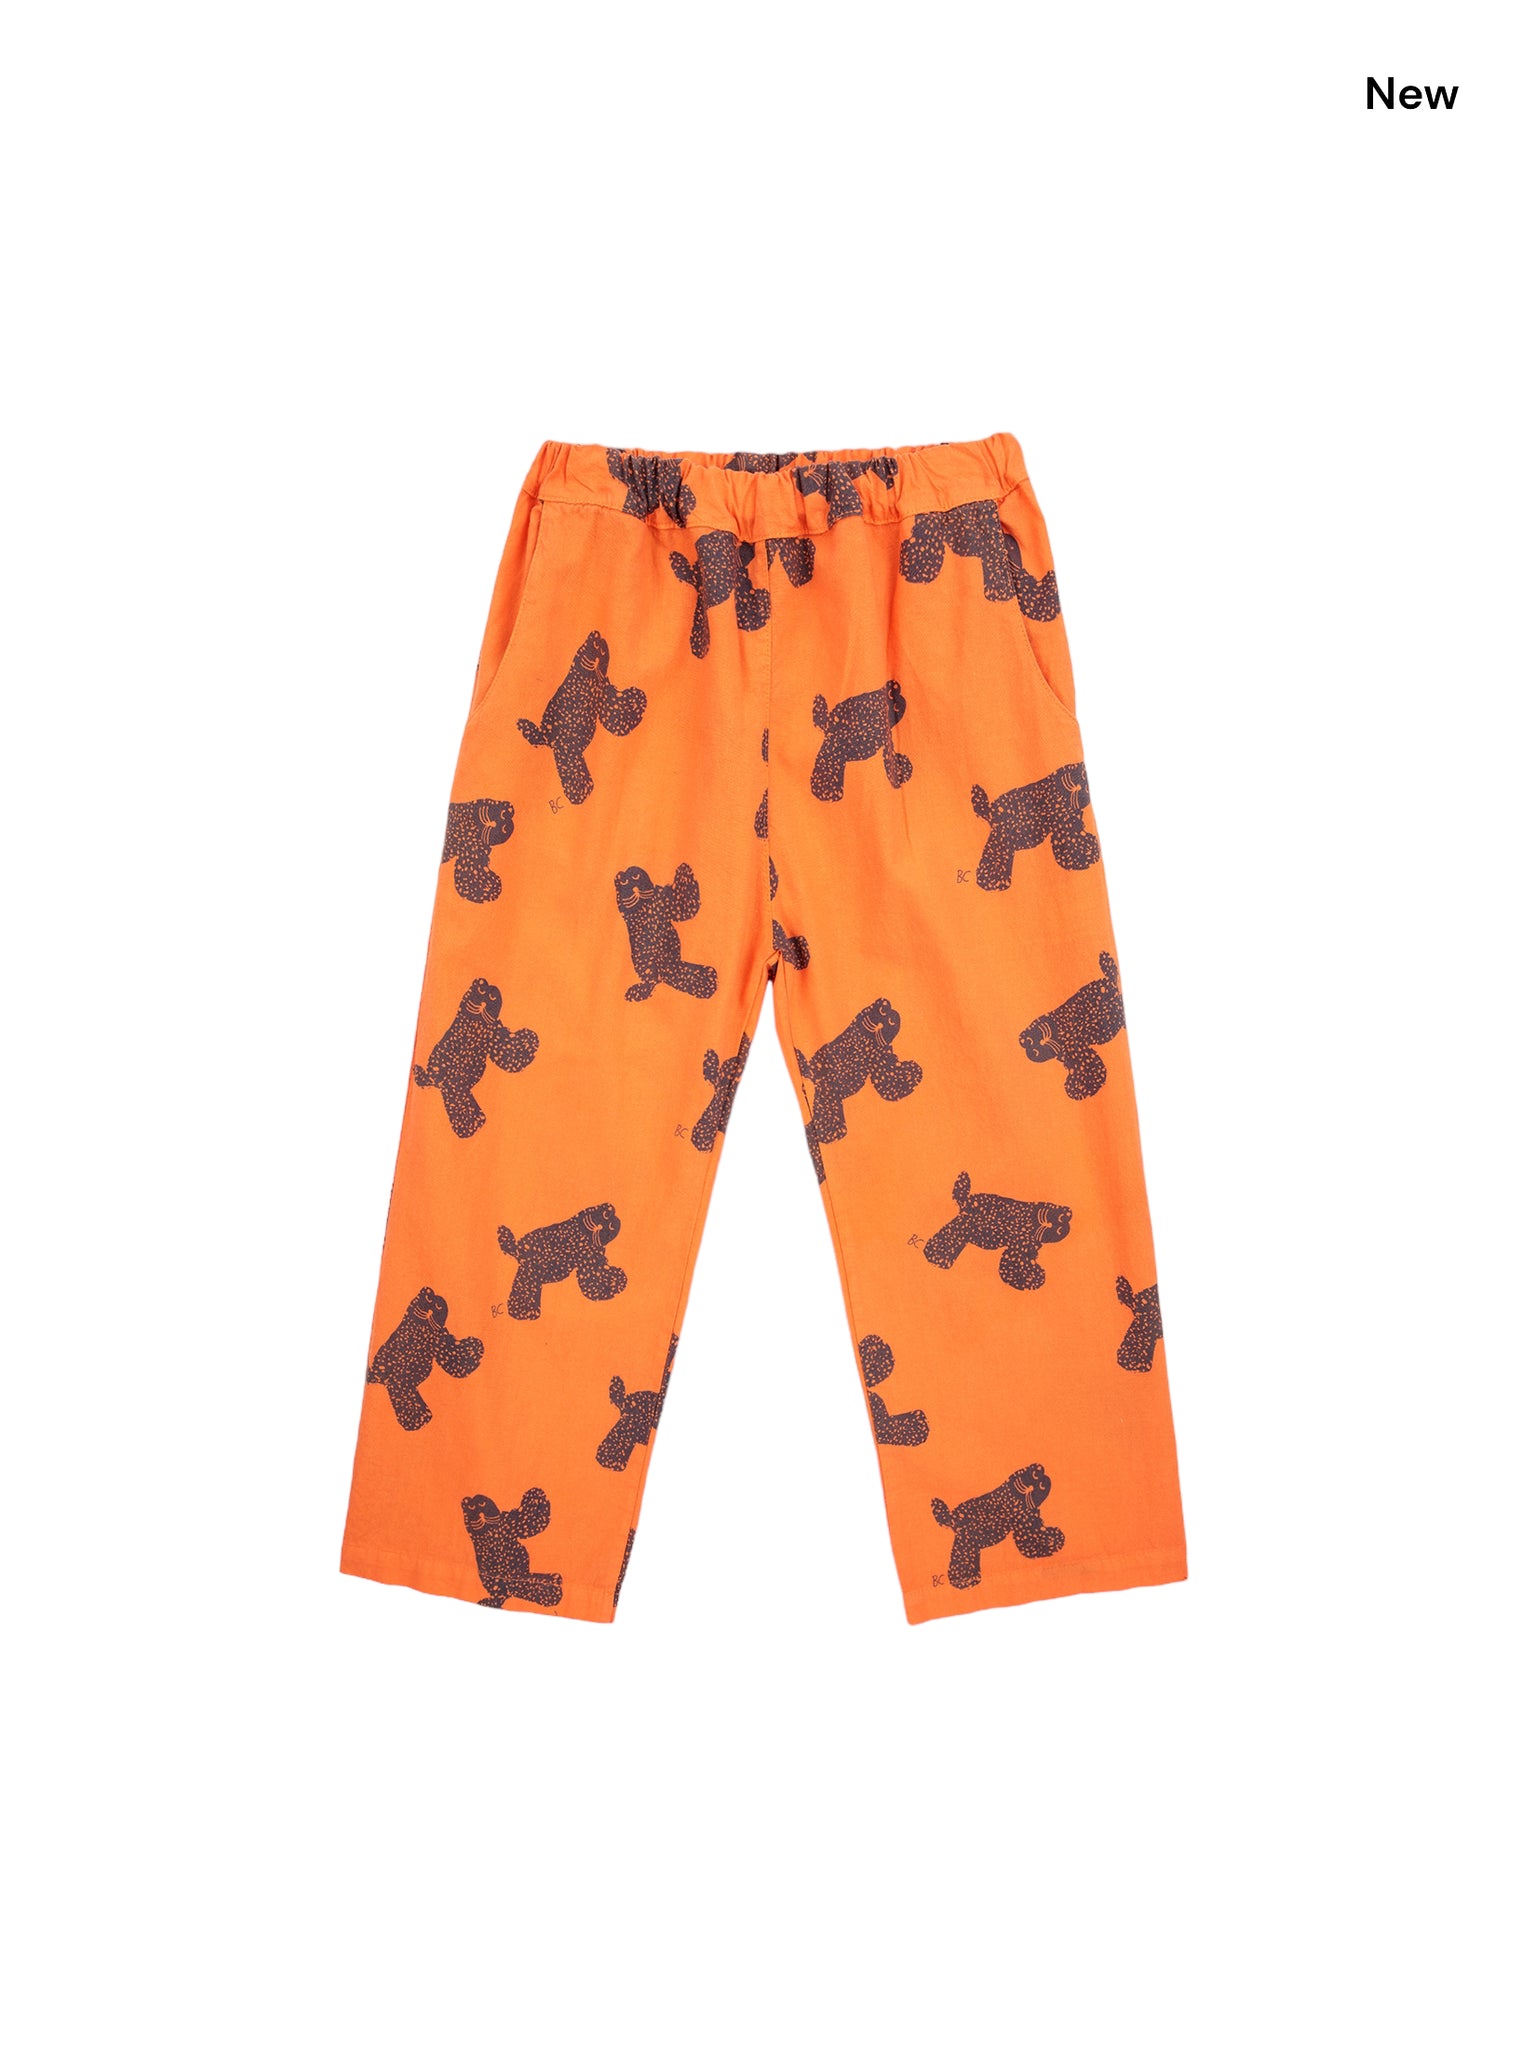 Pantalone arancione con stampa gatto all over per neonati e bambini